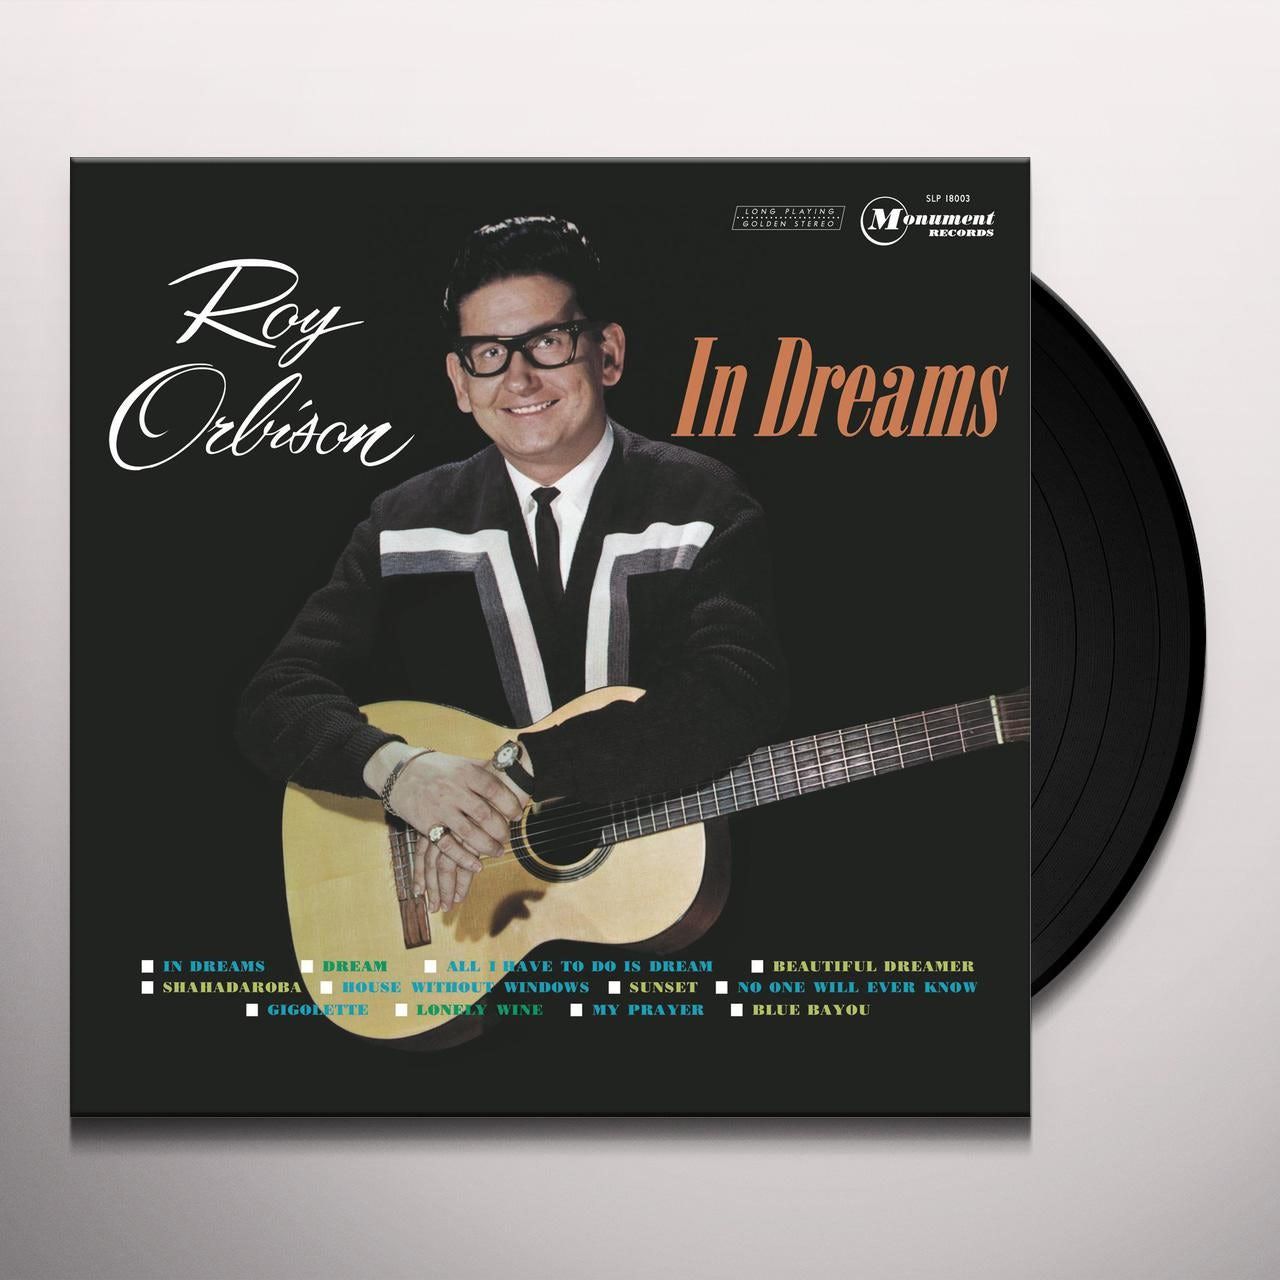 In Dreams: Vinyl LP